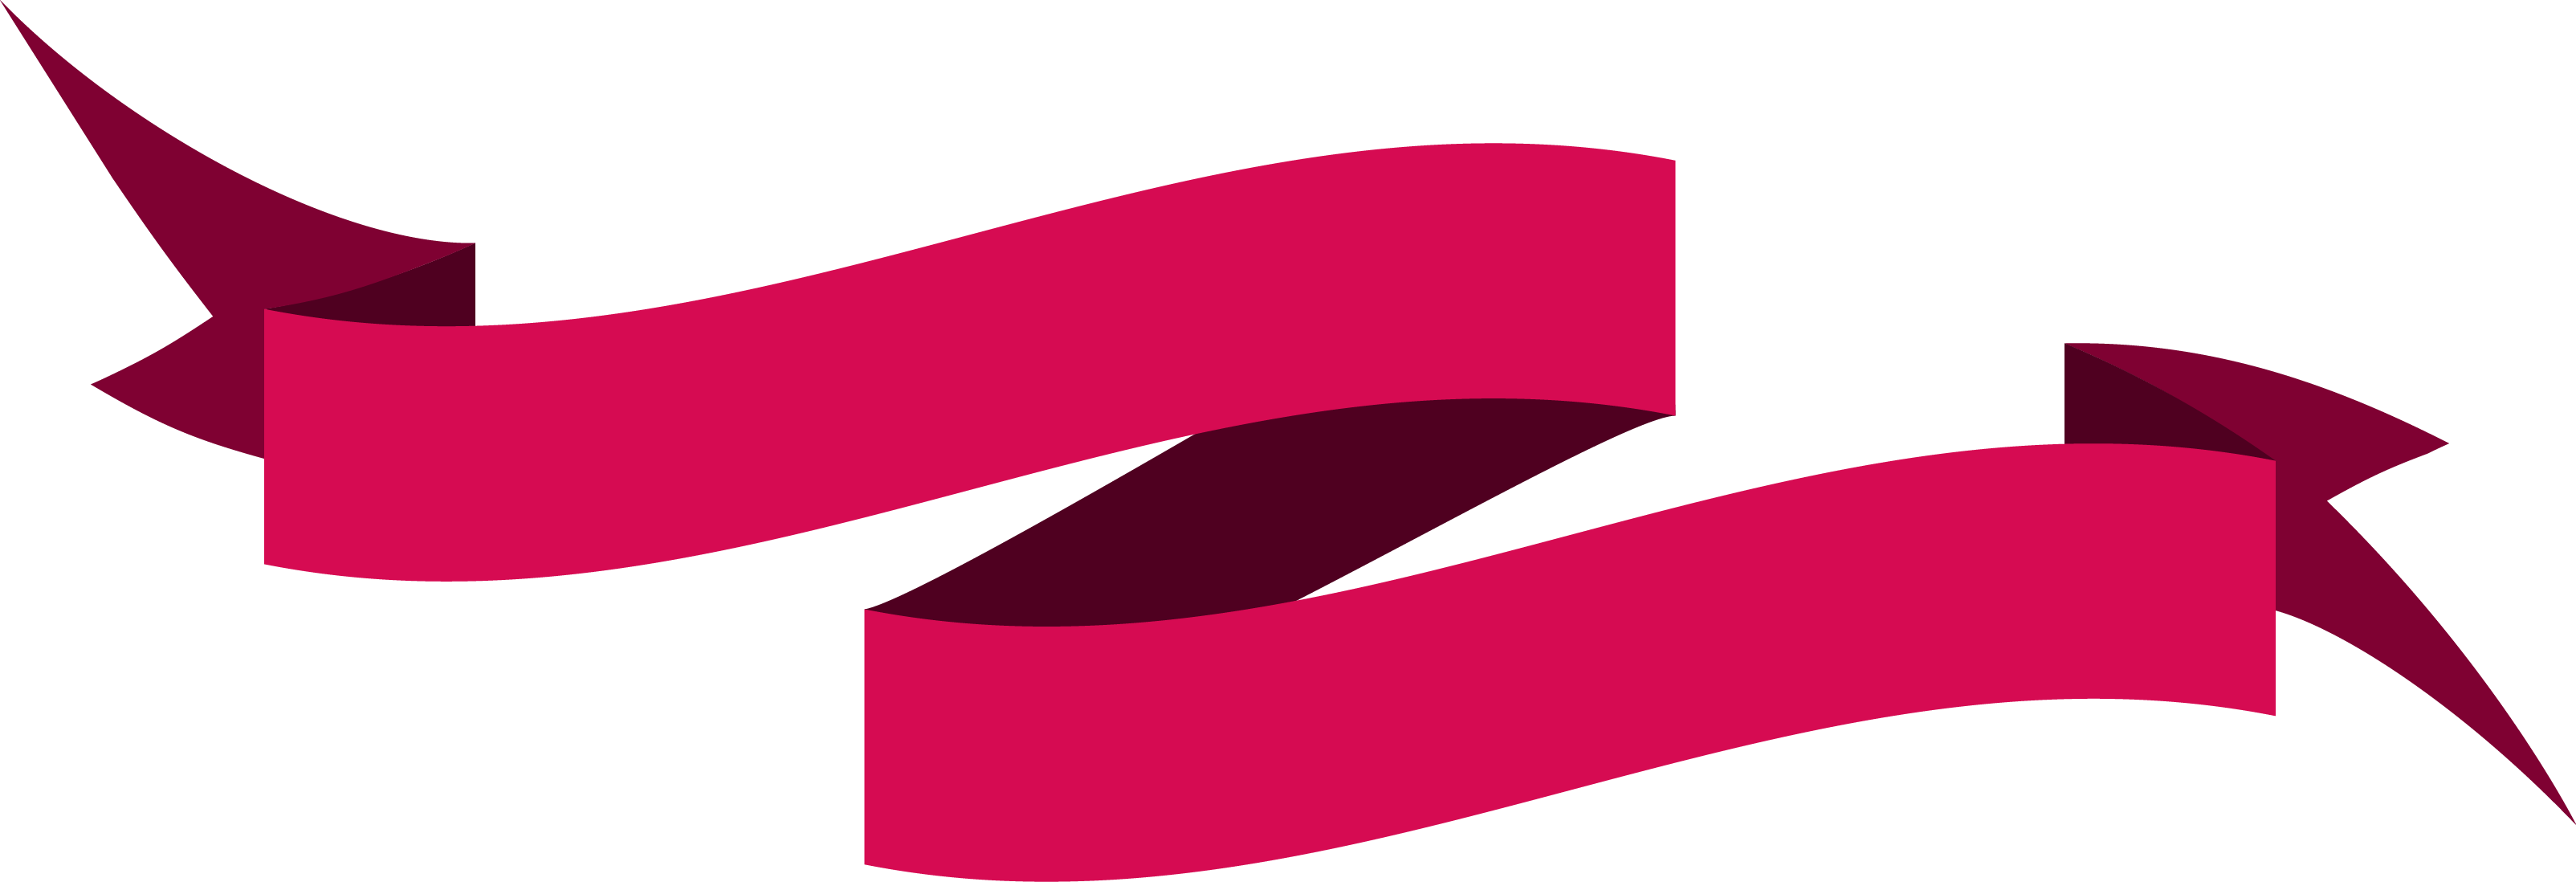 Pink Ribbon Ornament Vector - Vector Banner Ribbon Hd Png (3208x1098)